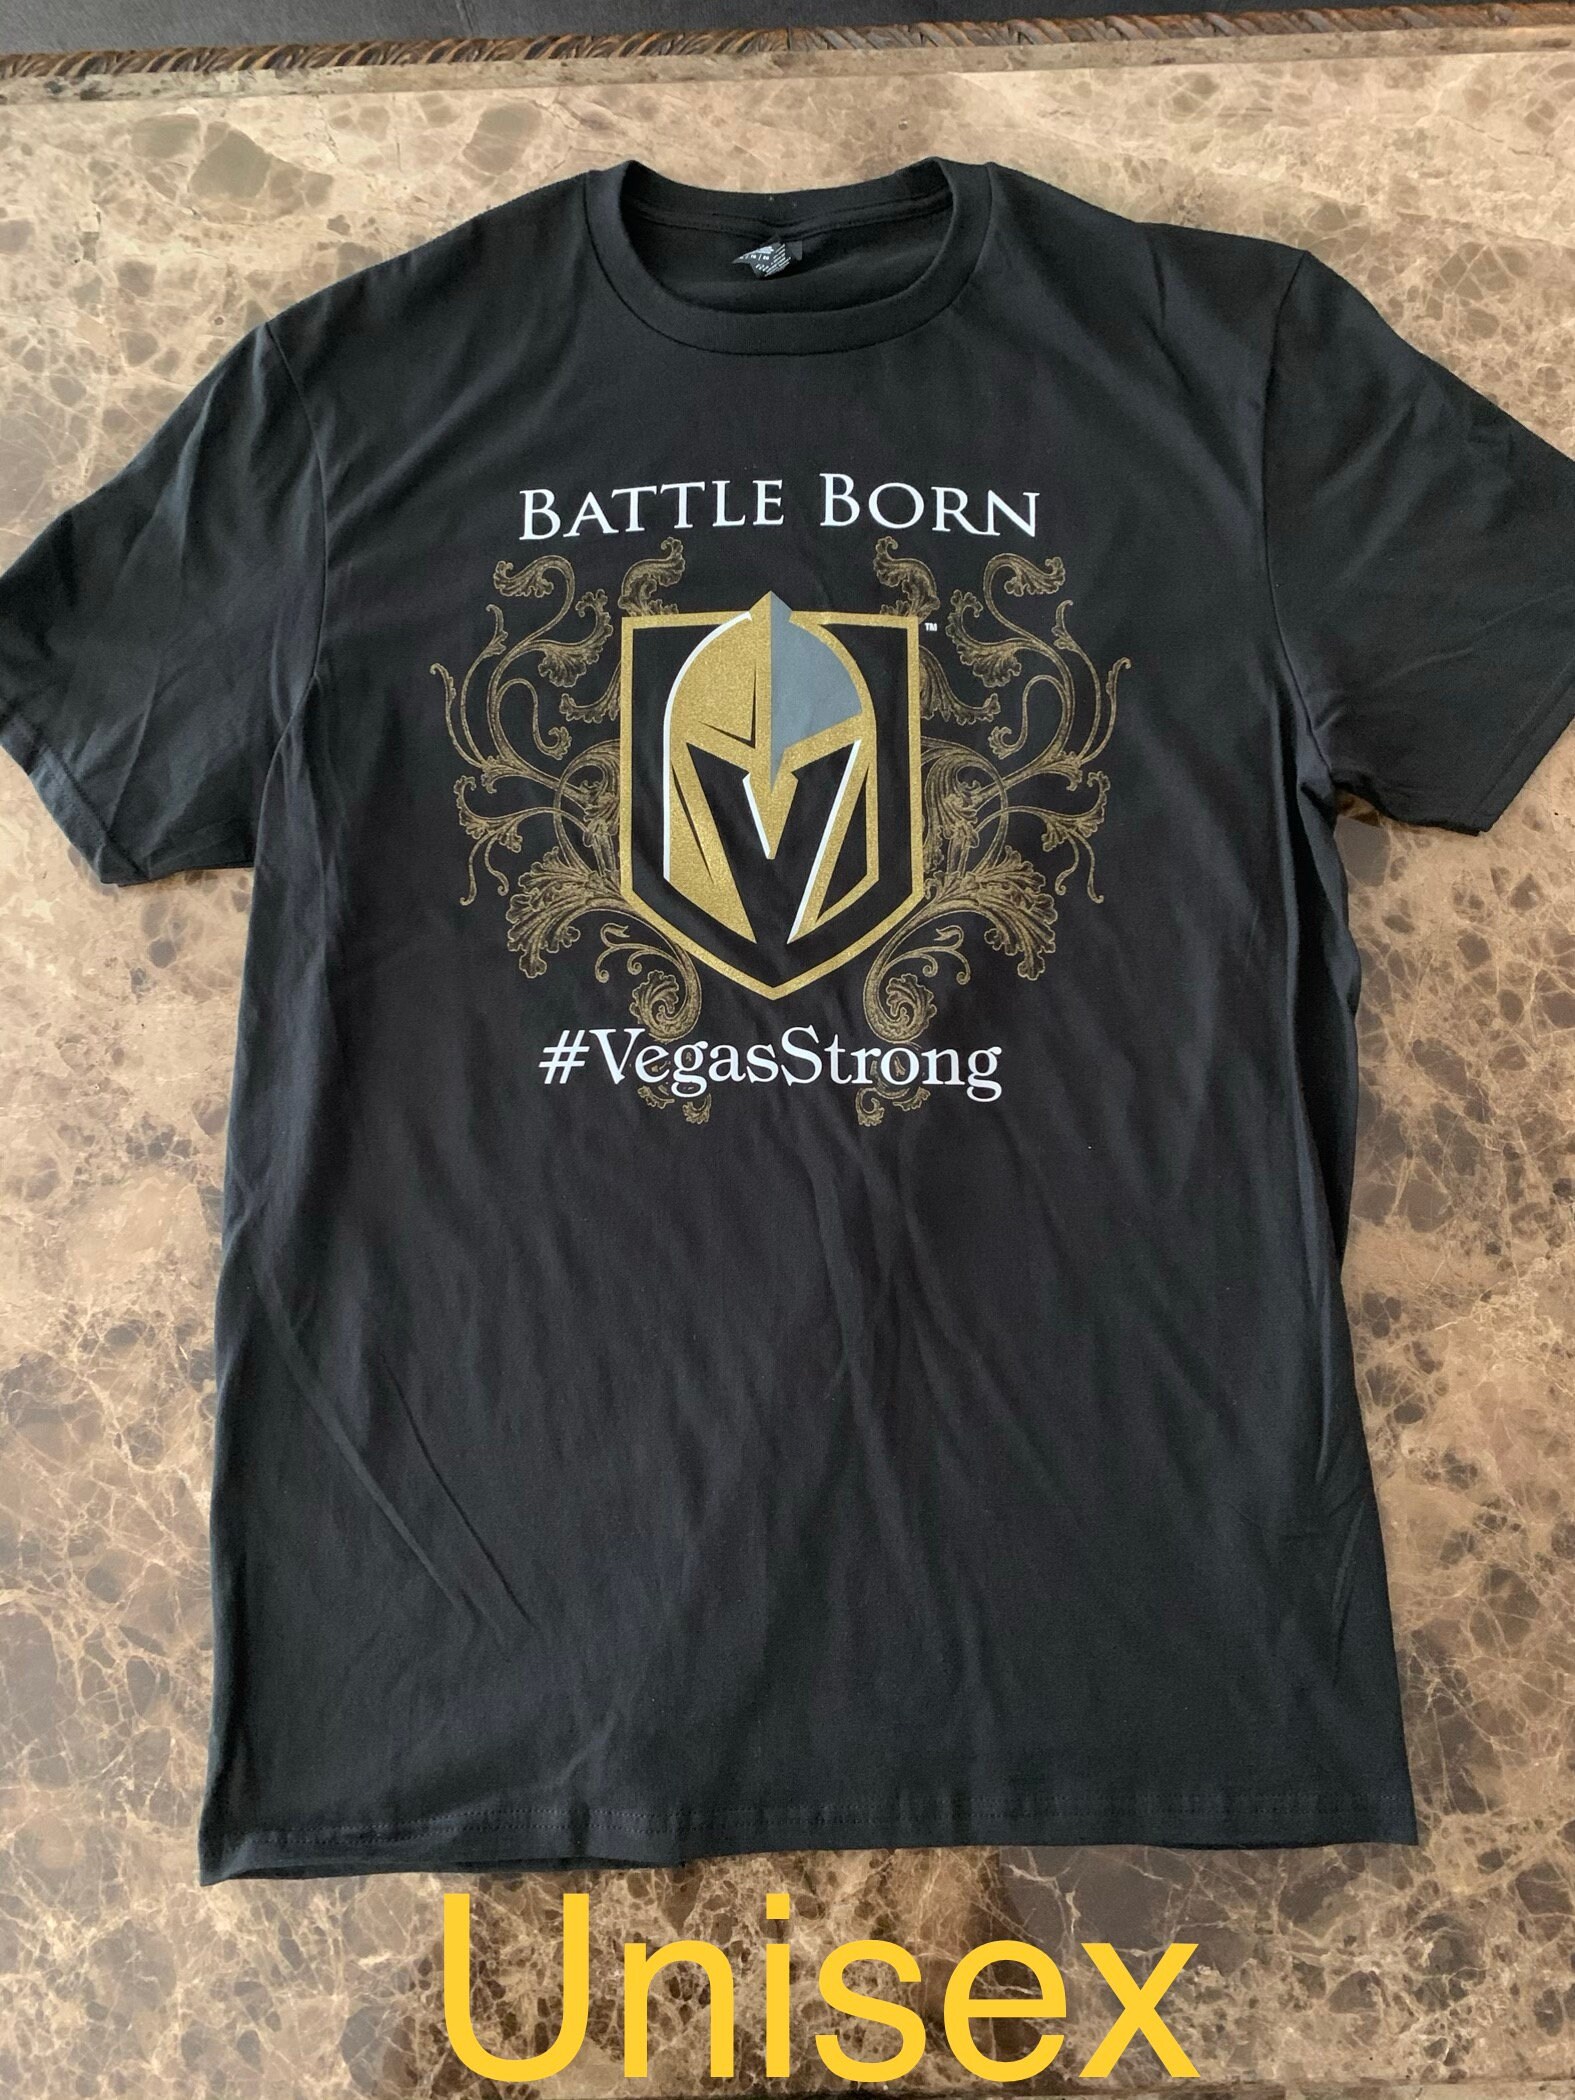 Las Vegas Golden Misfits Knights Hockey Shirt - Listentee